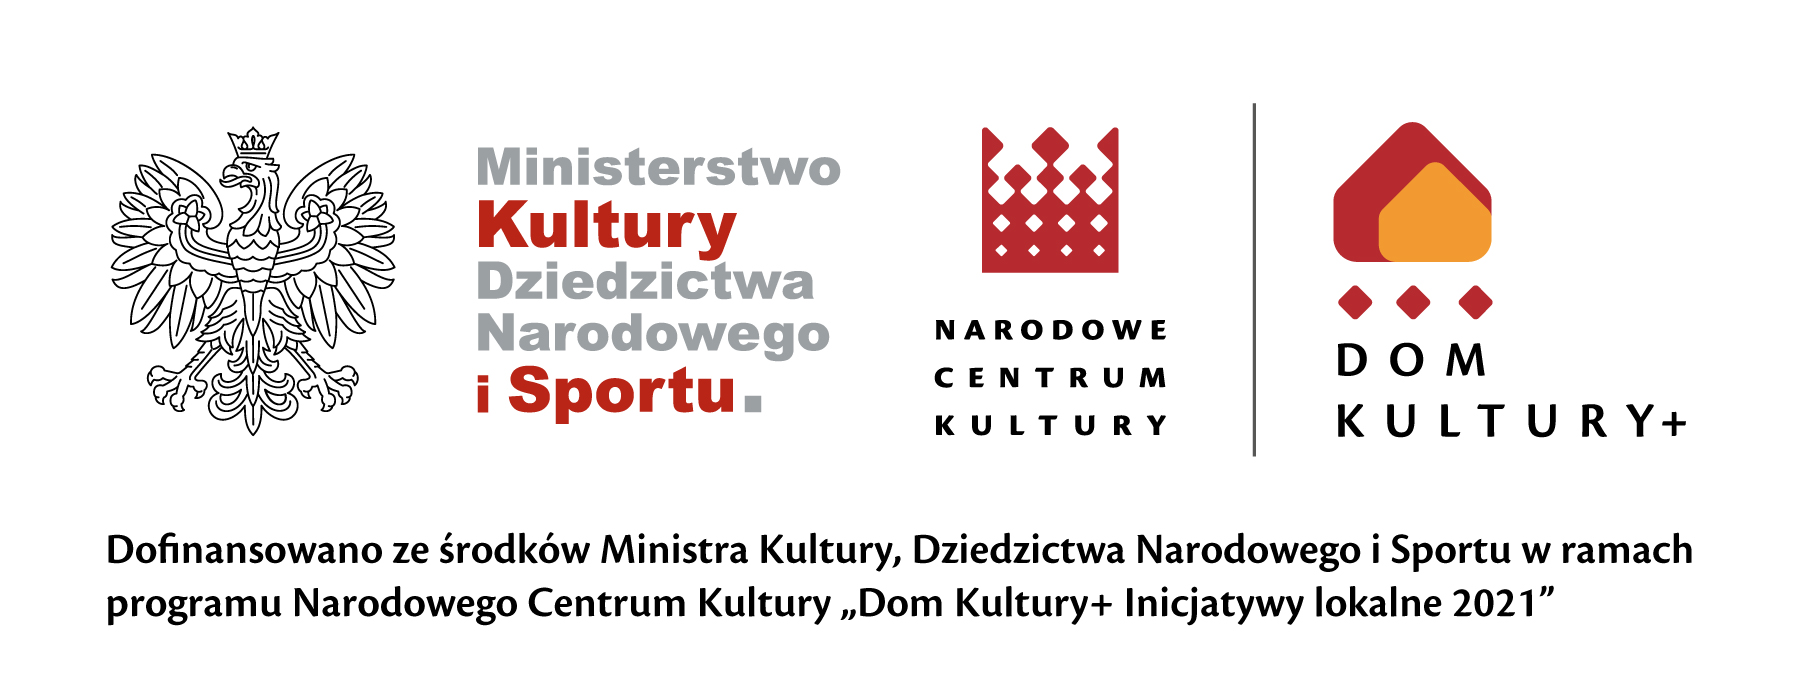 Logotypy Ministerstwa Kultury i informacją o dofinansowaniu. Jej treść jest zawarta w artykule